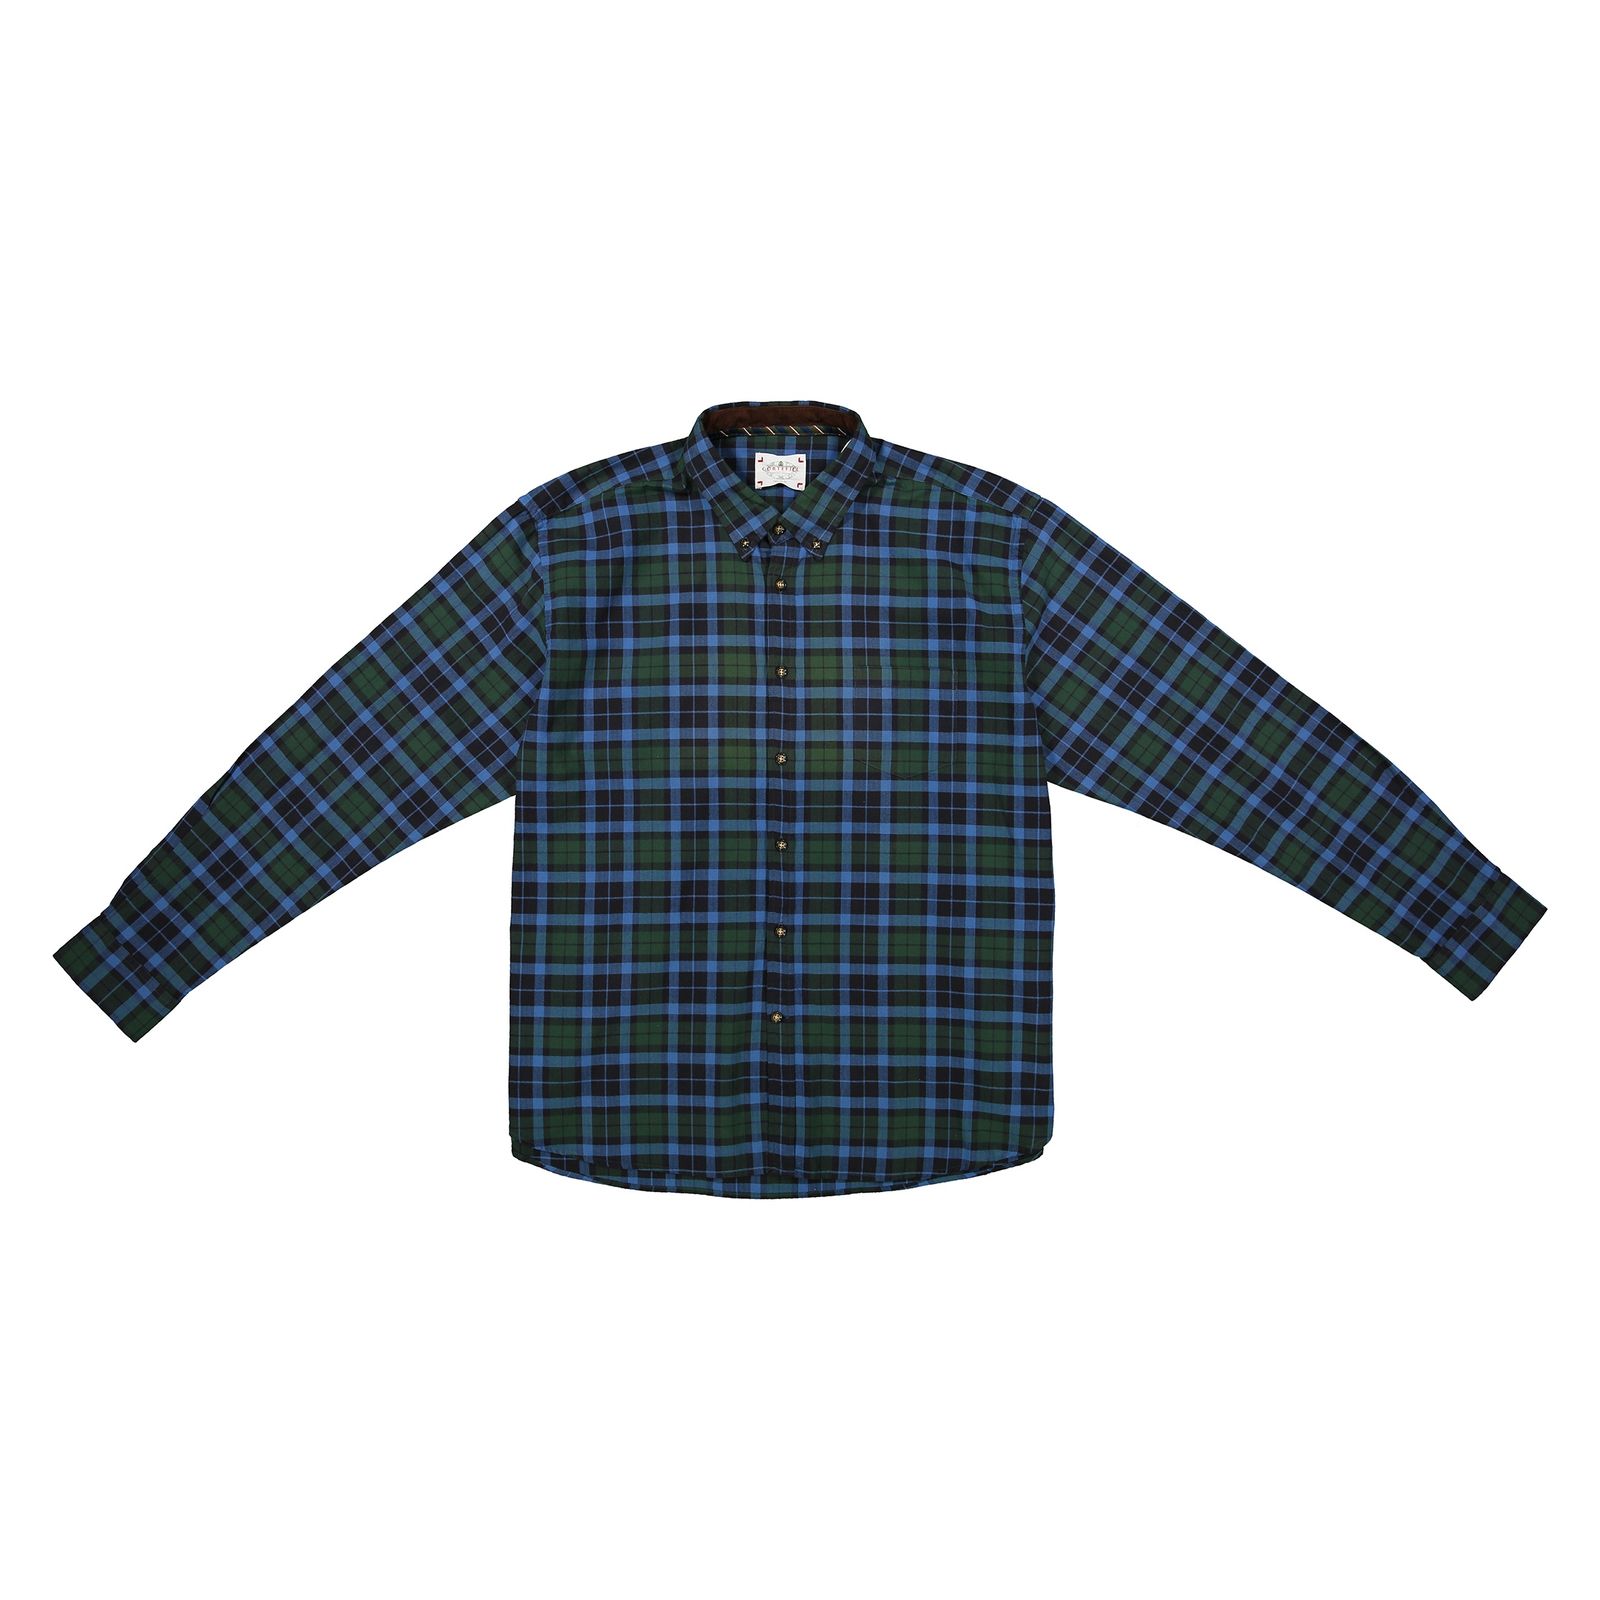 پیراهن مردانه کورتفیل مدل 7322860-20 - سبز تیره - 1